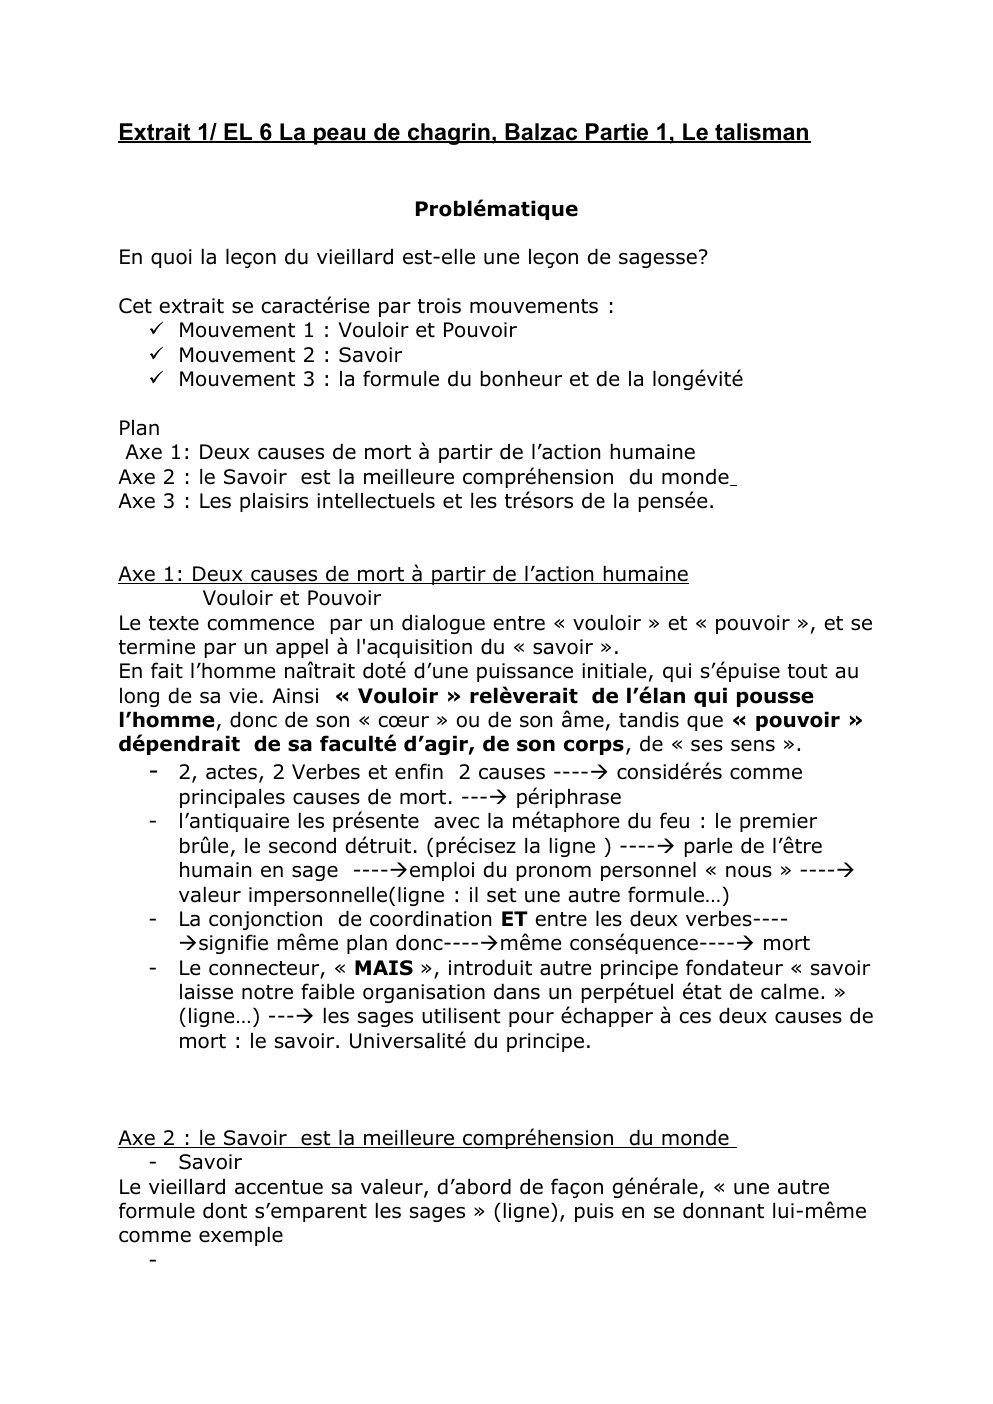 Prévisualisation du document Extrait 1/ EL 6 La peau de chagrin, Balzac Partie 1, Le talisman